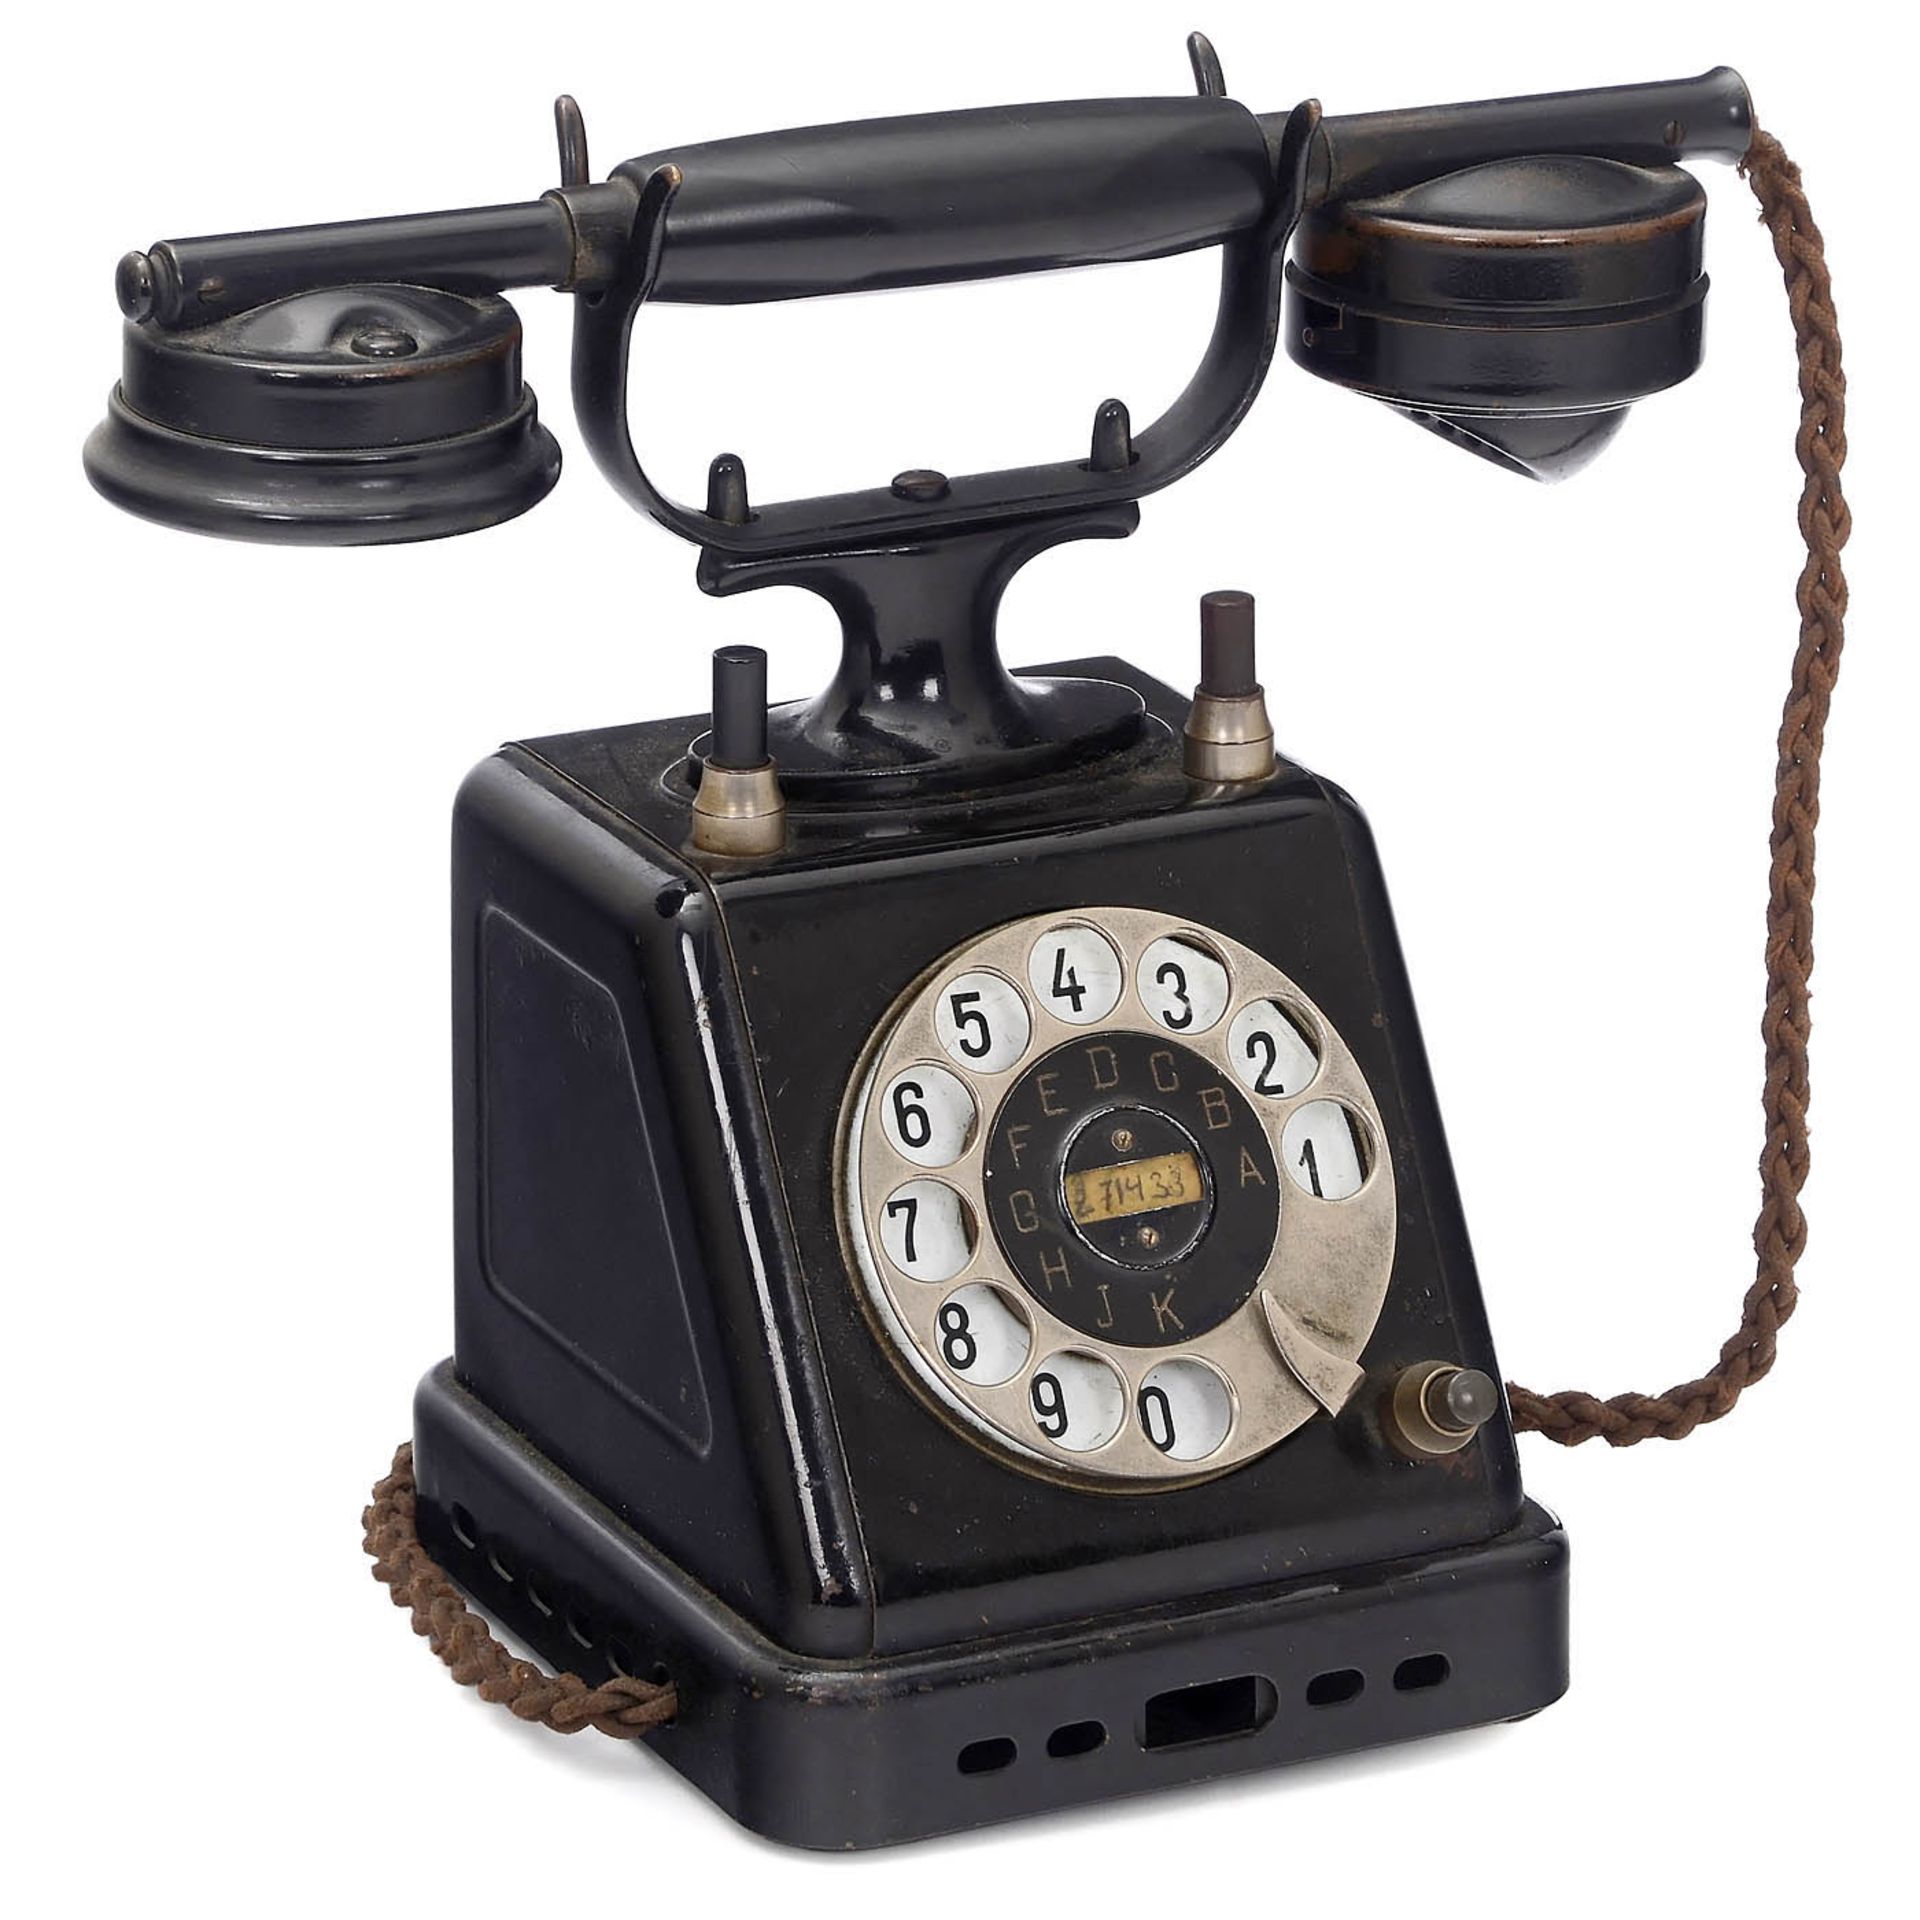 2 German Telephones - Image 2 of 3